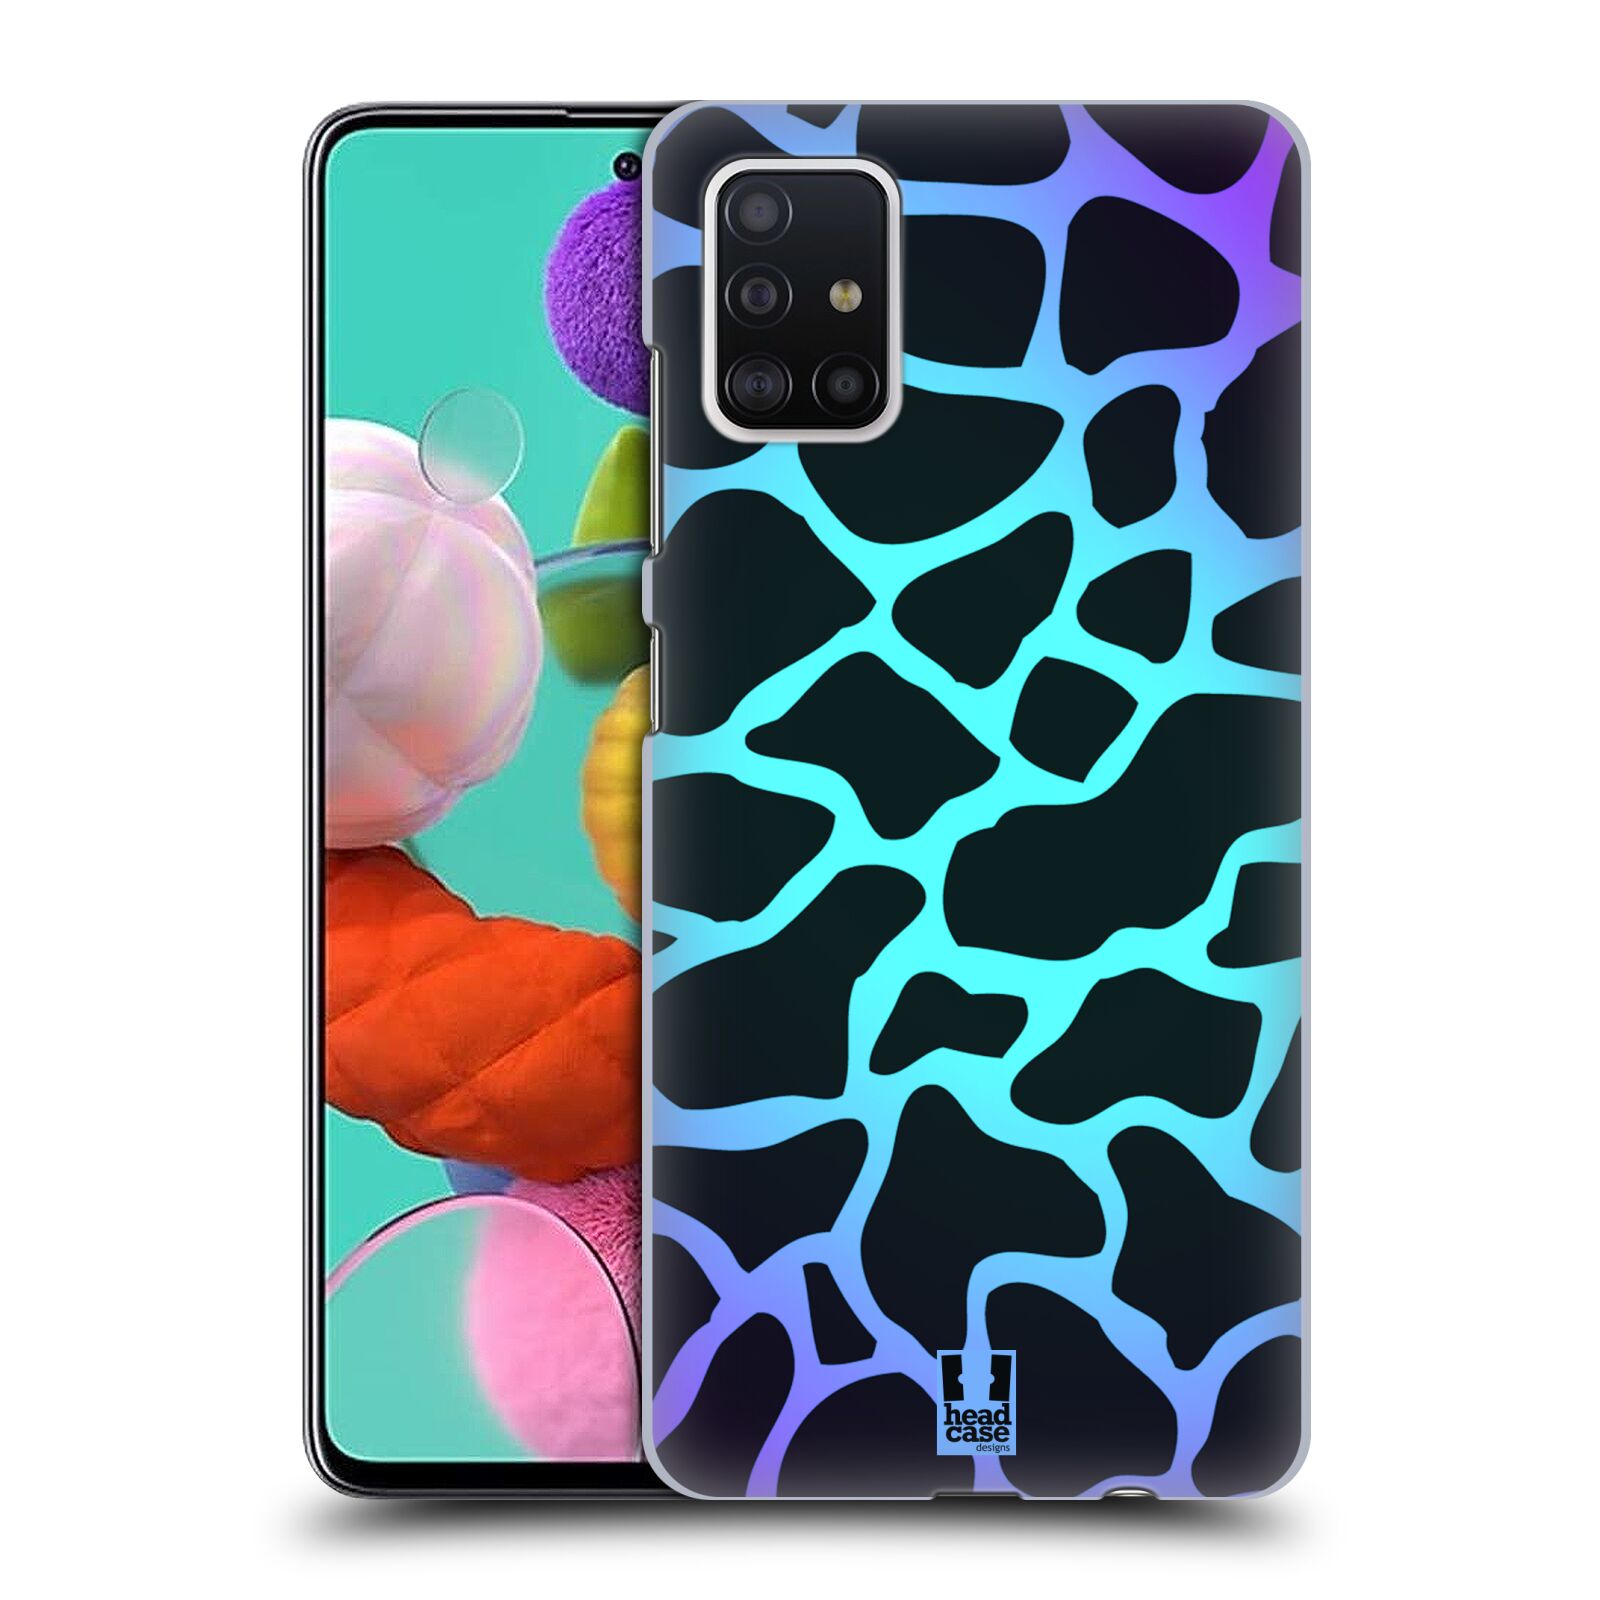 Pouzdro na mobil Samsung Galaxy A51 - HEAD CASE - vzor Divočina zvíře tyrkysová žirafa magický vzor